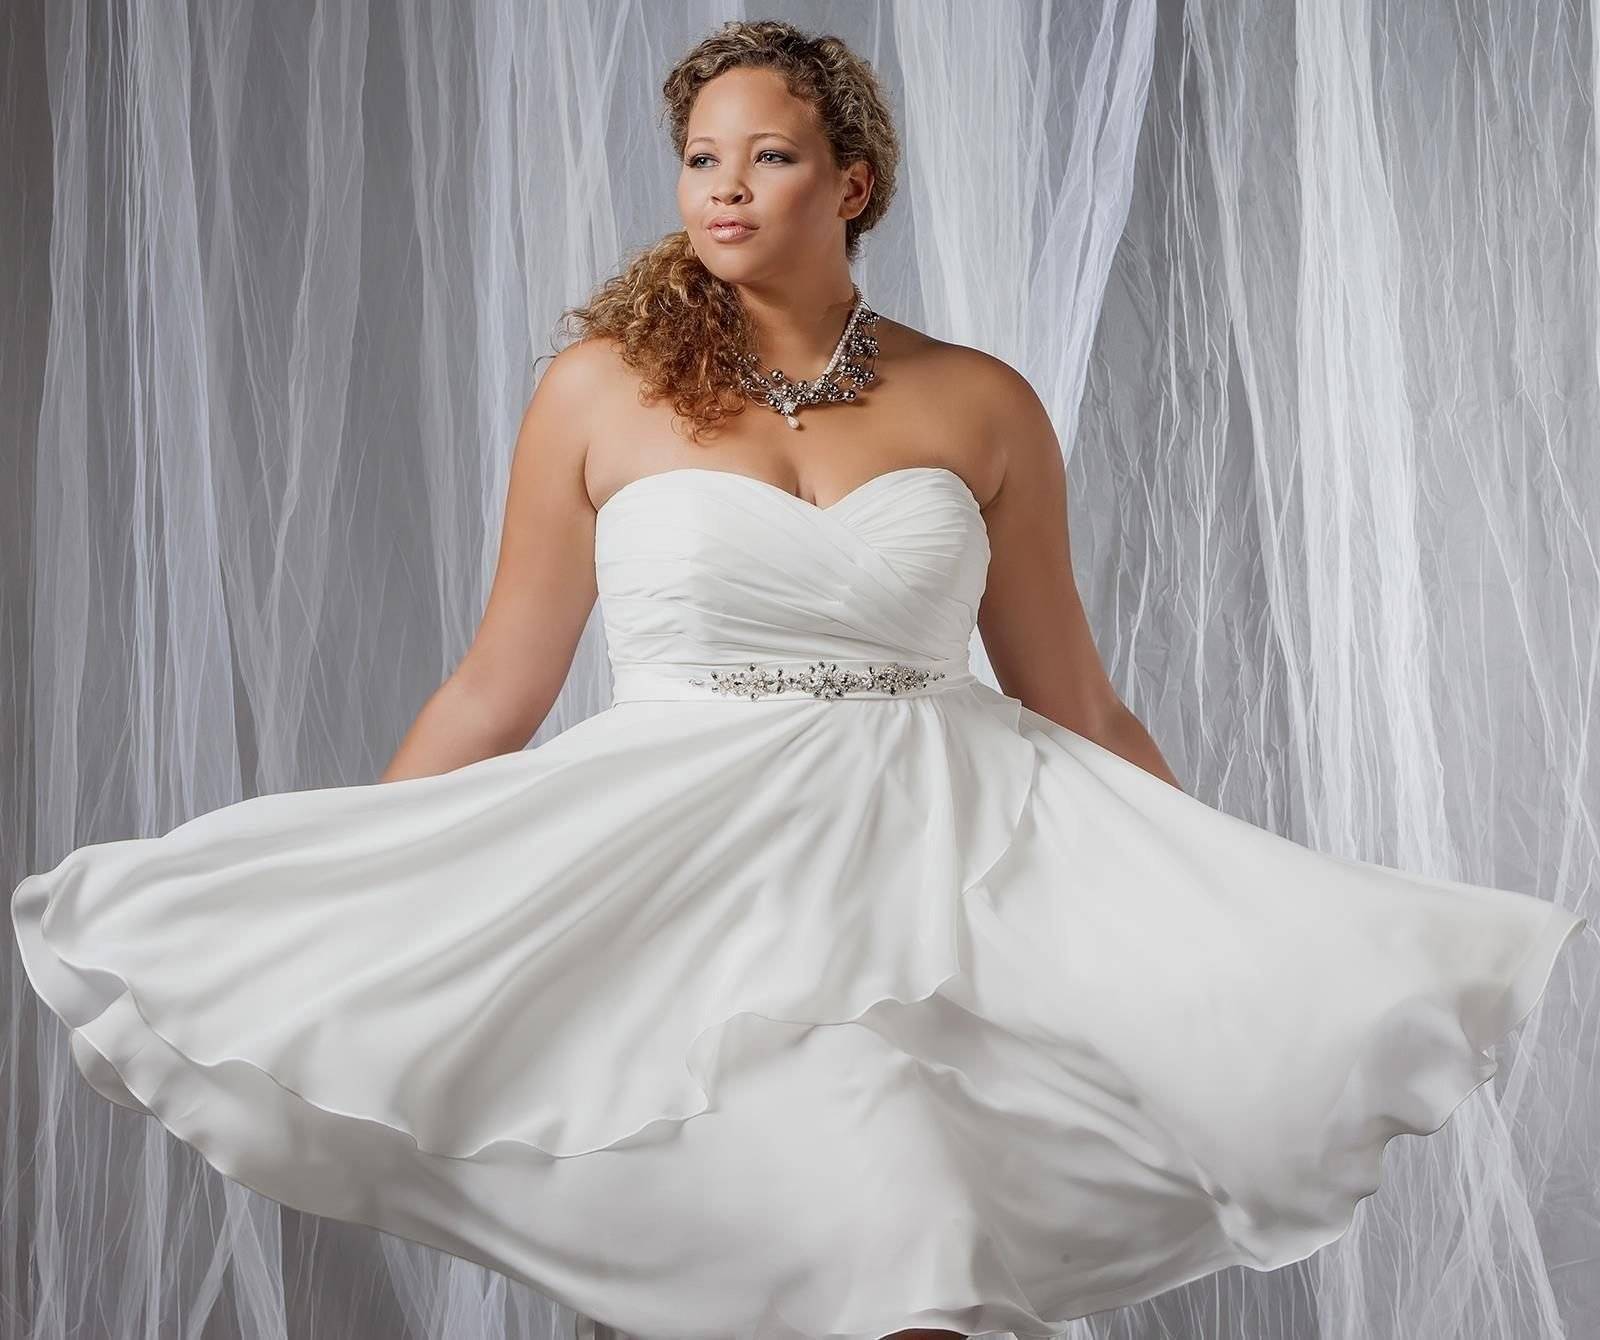 Свадебные платья для полных девушек — подчеркиваем достоинства